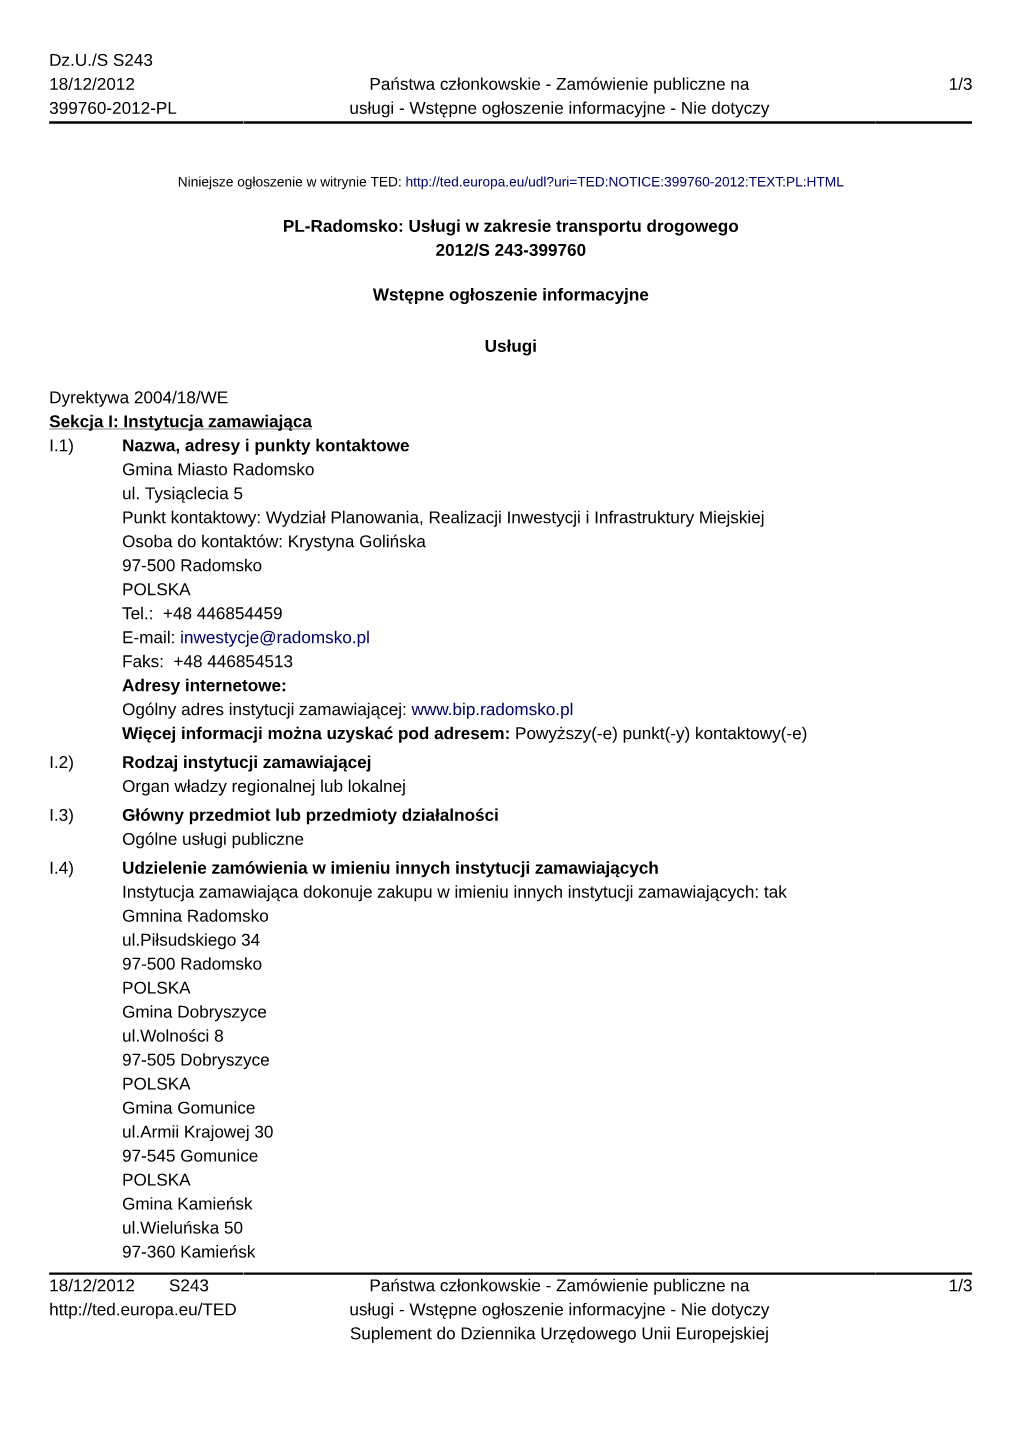 PL-Radomsko: Usługi W Zakresie Transportu Drogowego 2012/S 243-399760